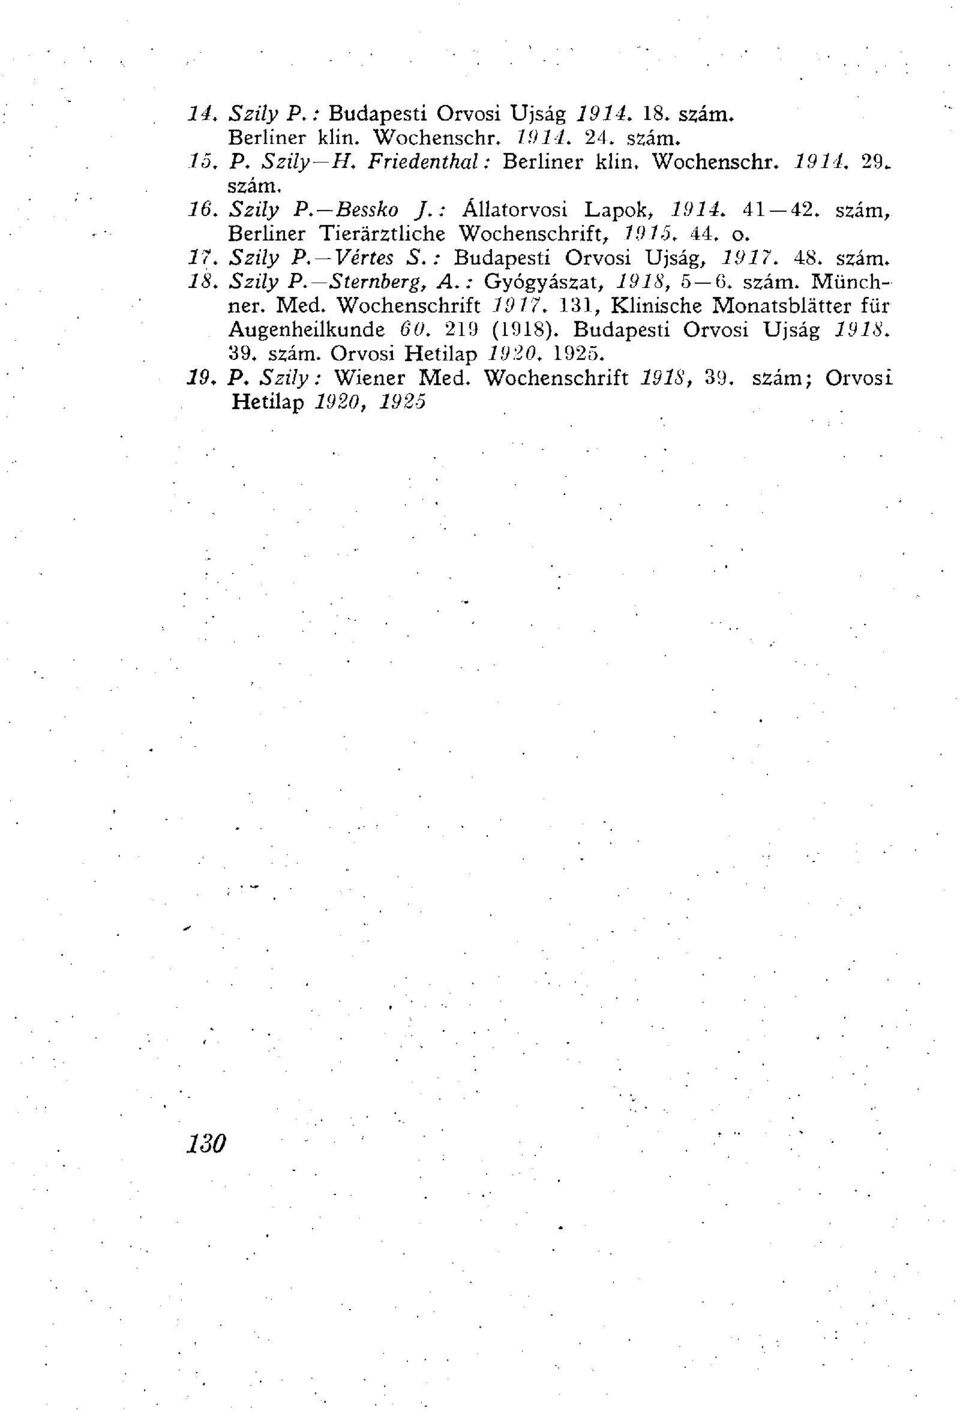 : Budapesti Orvosi Újság, 1917. 48. szám. 18. Szily P. Sternberg, A.: Gyógyászat, 1918, 5 6. szám. Münchner. Med. Wochenschrift 1917.